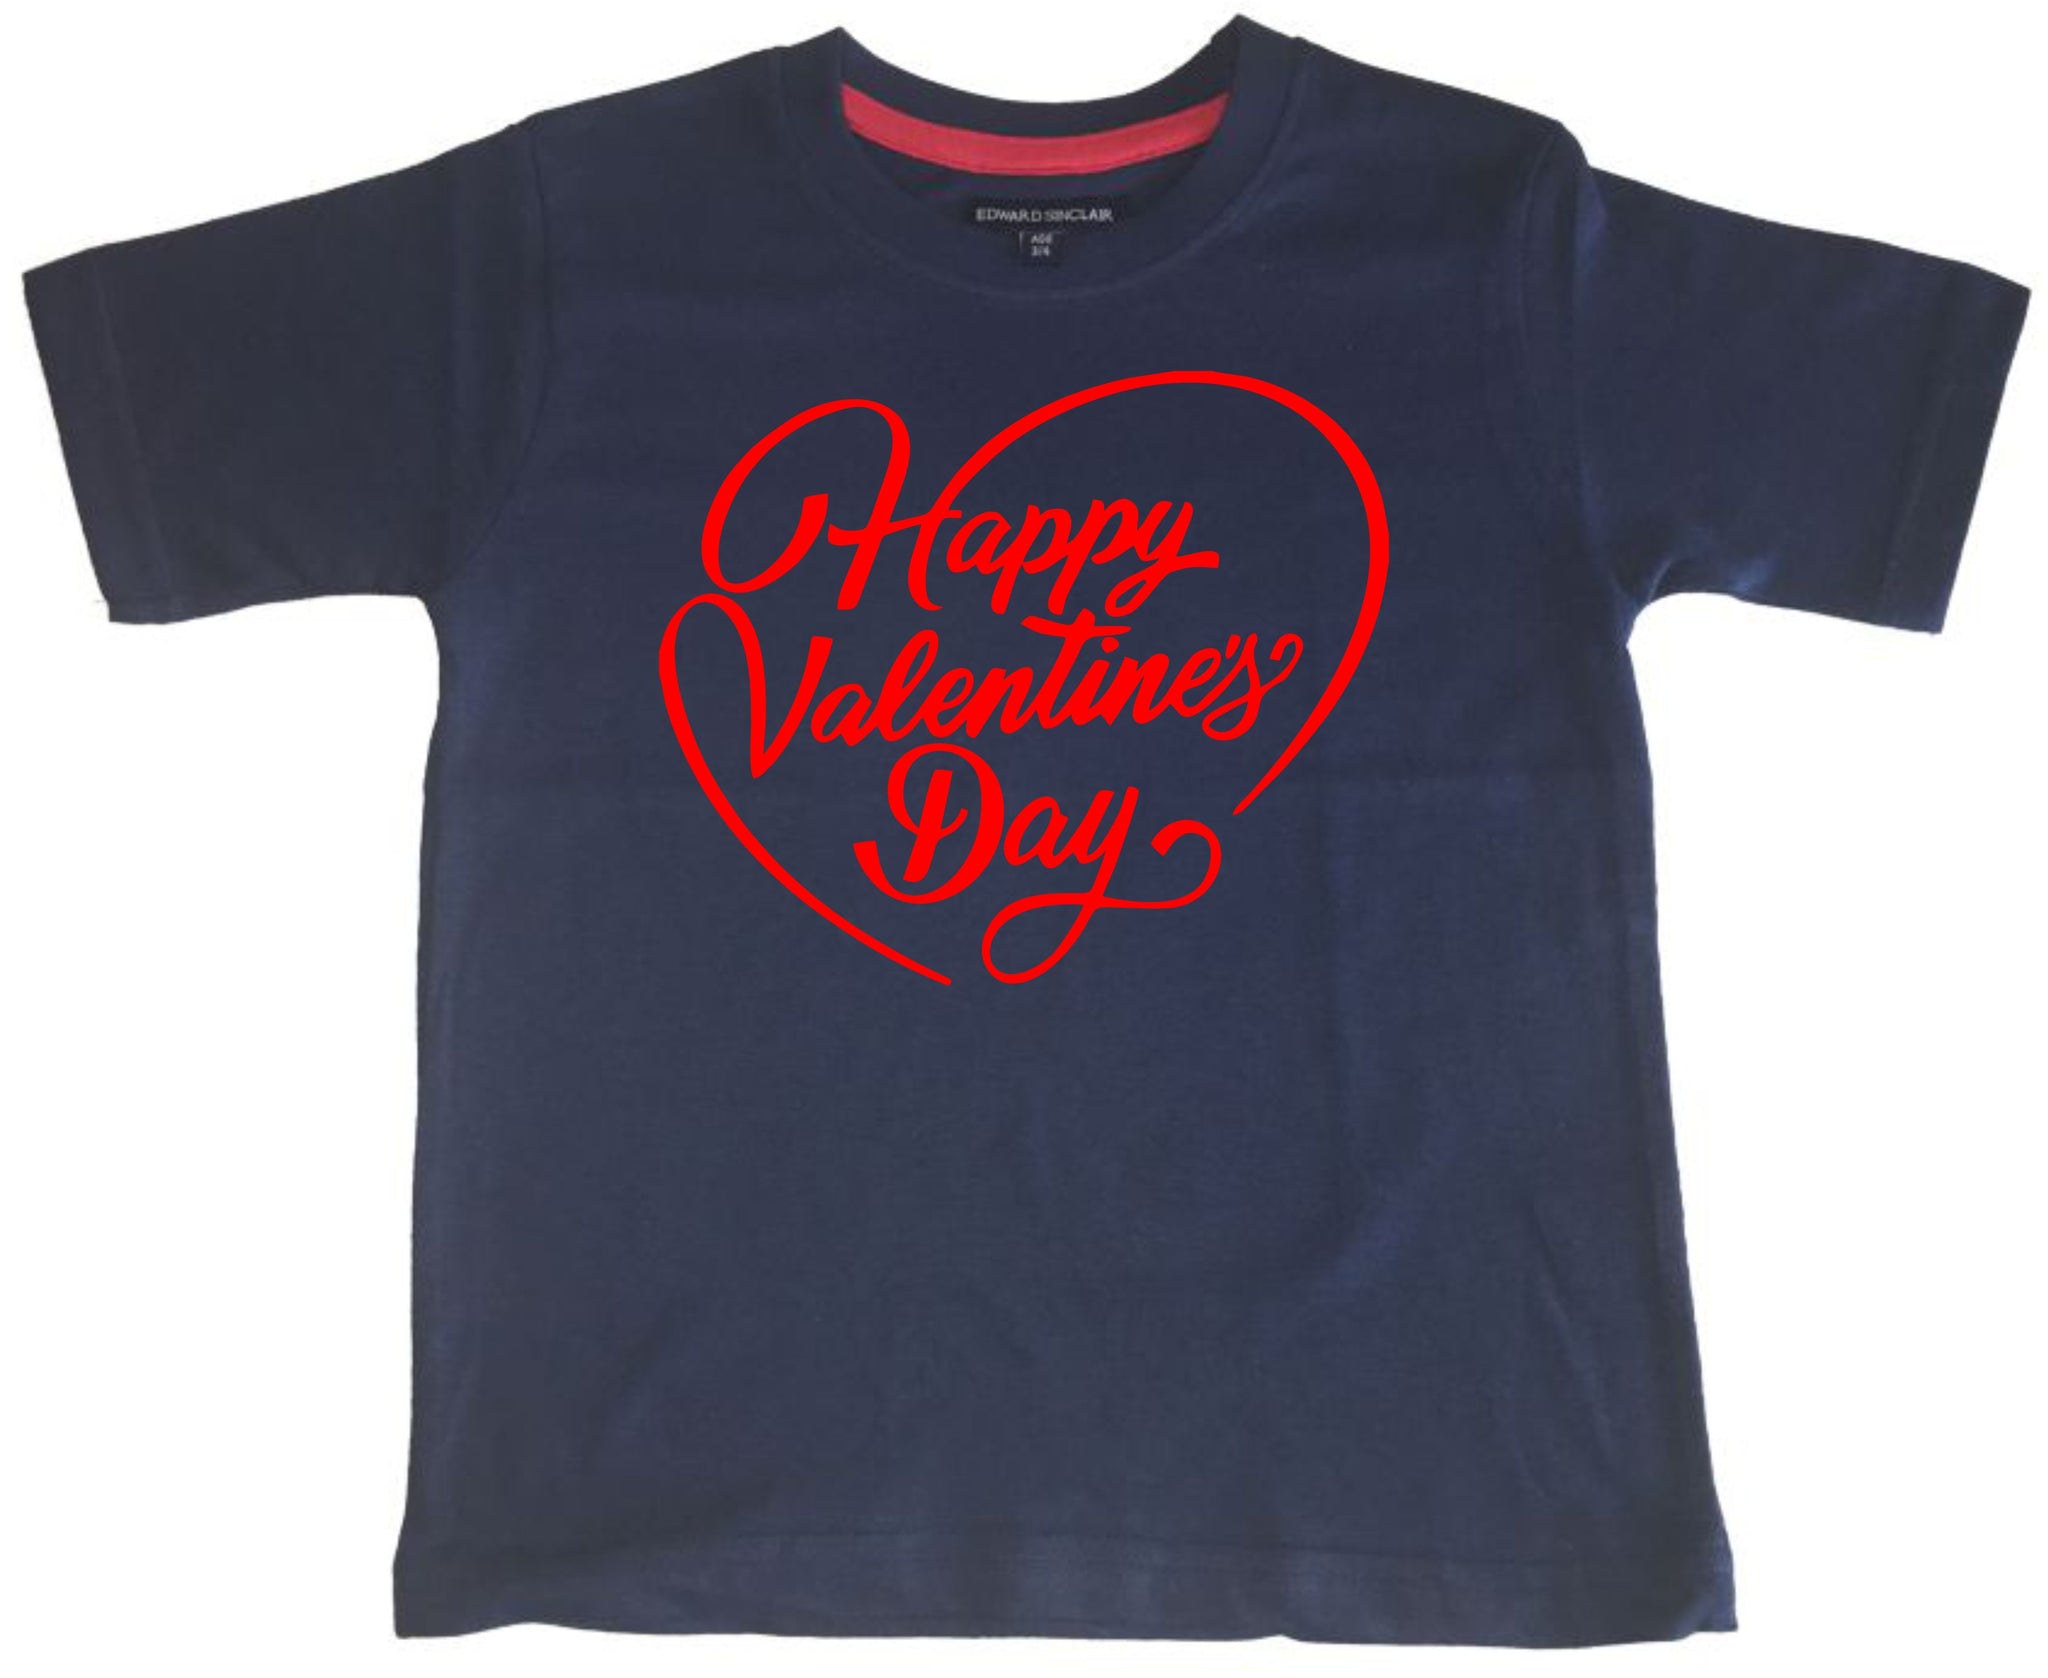 T-shirt enfant Joyeuse Saint Valentin